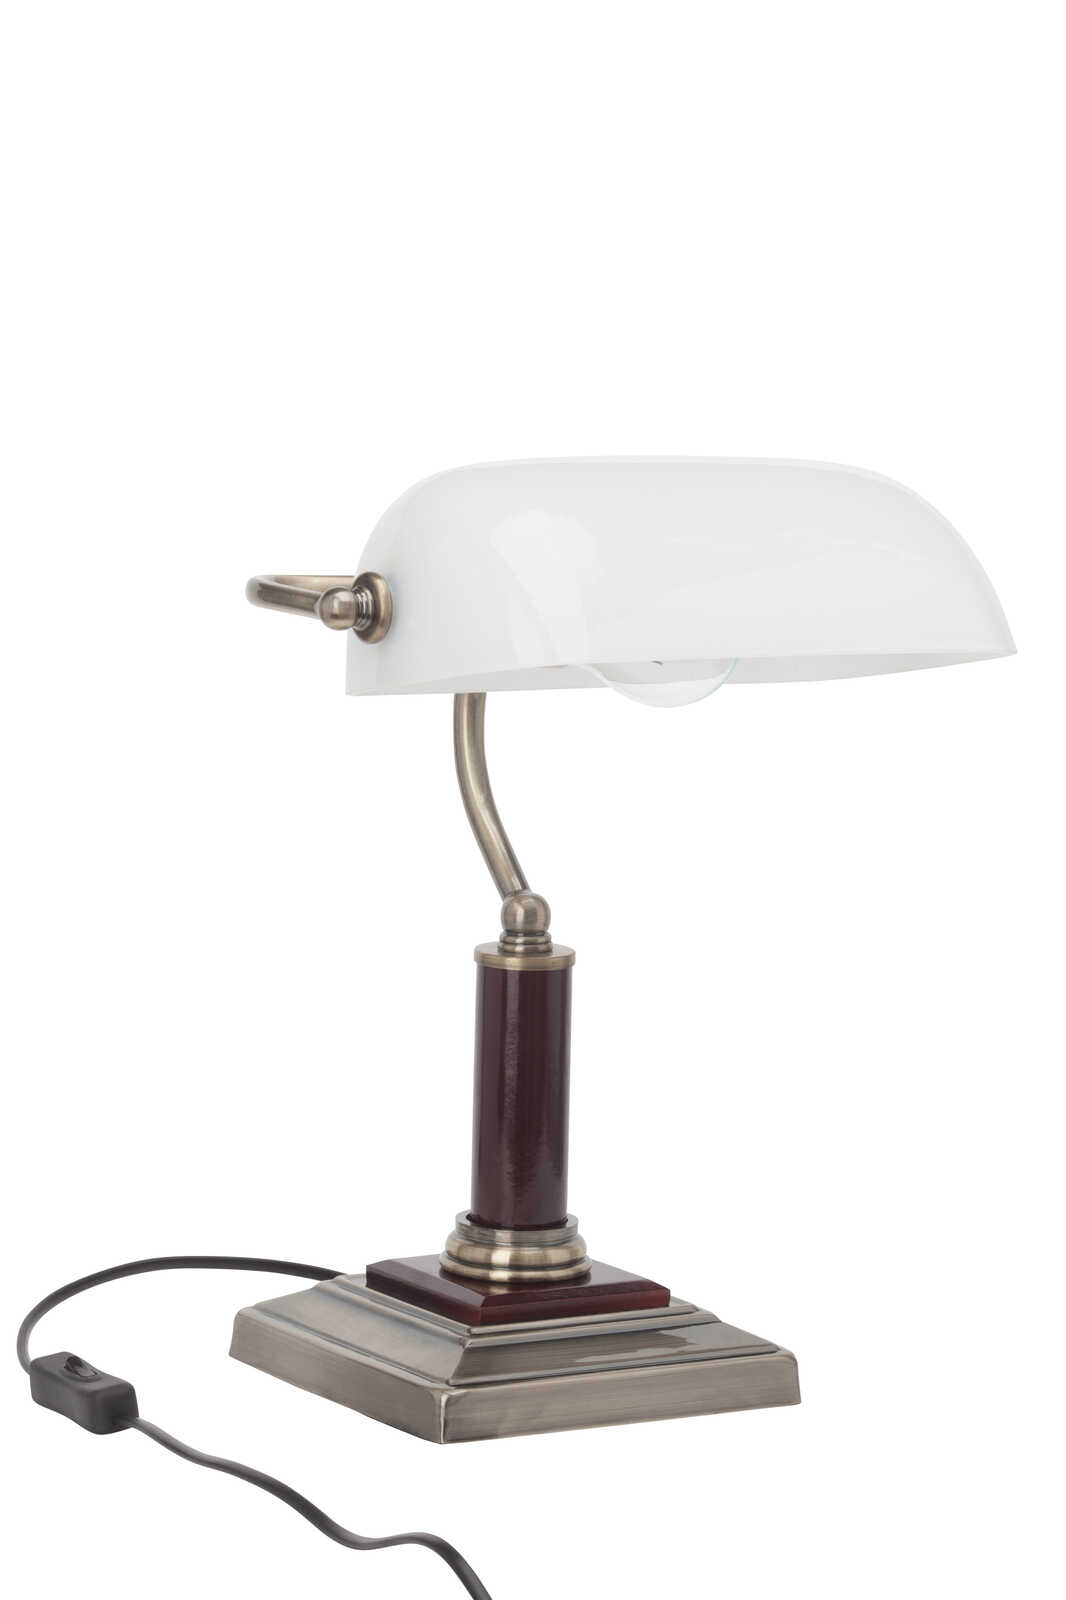             Lámpara de mesa de cristal - Arian - Oro
        